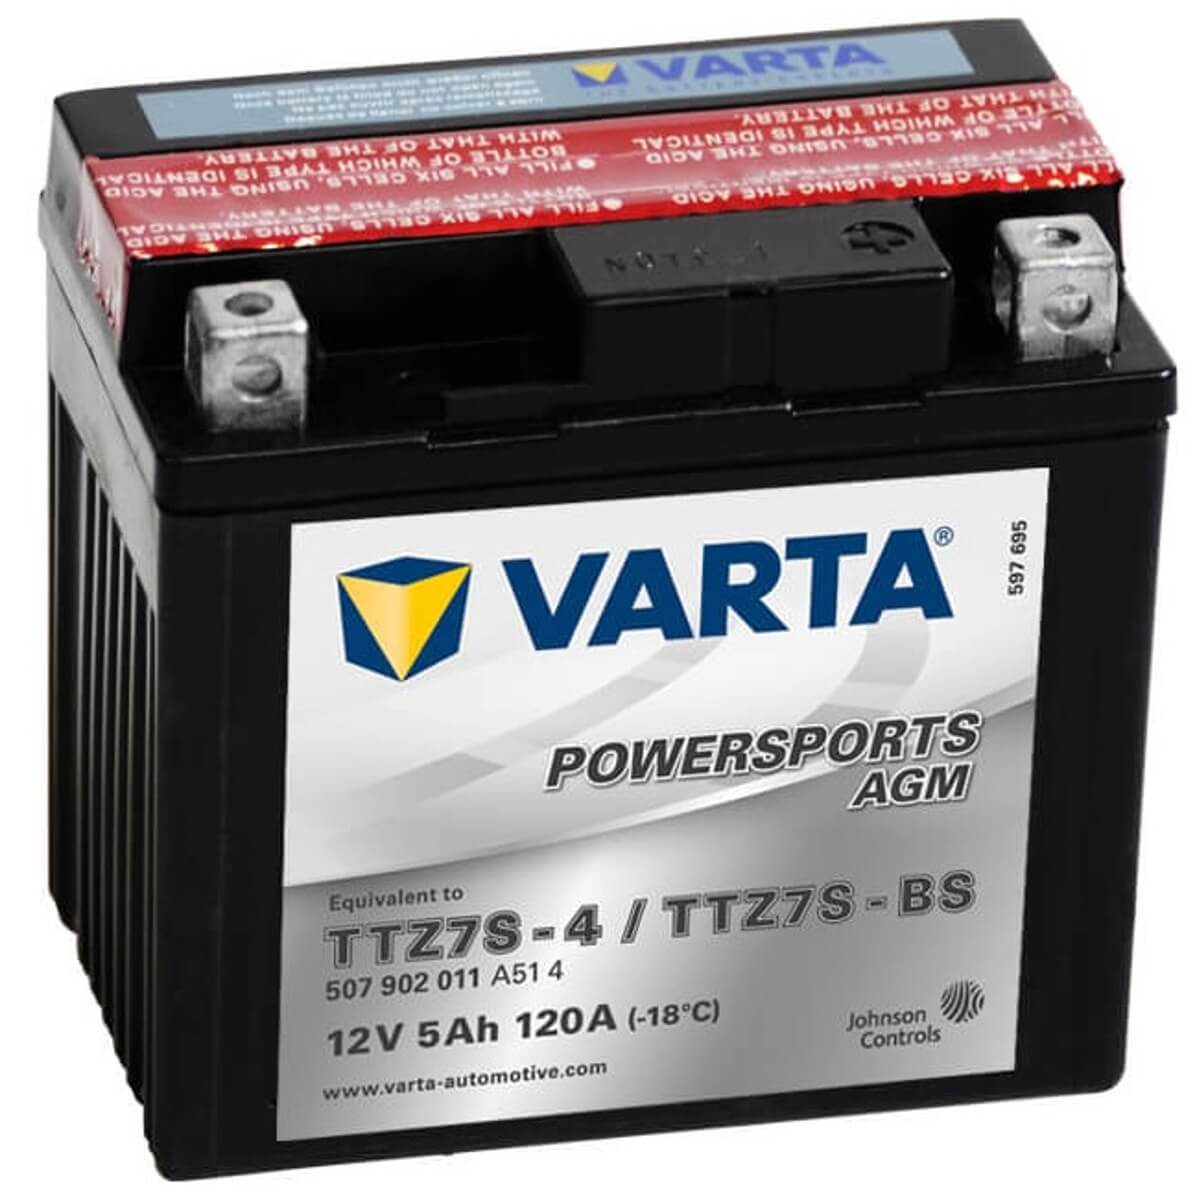 Varta Powersports 507902 AGM 12V 5Ah 120A